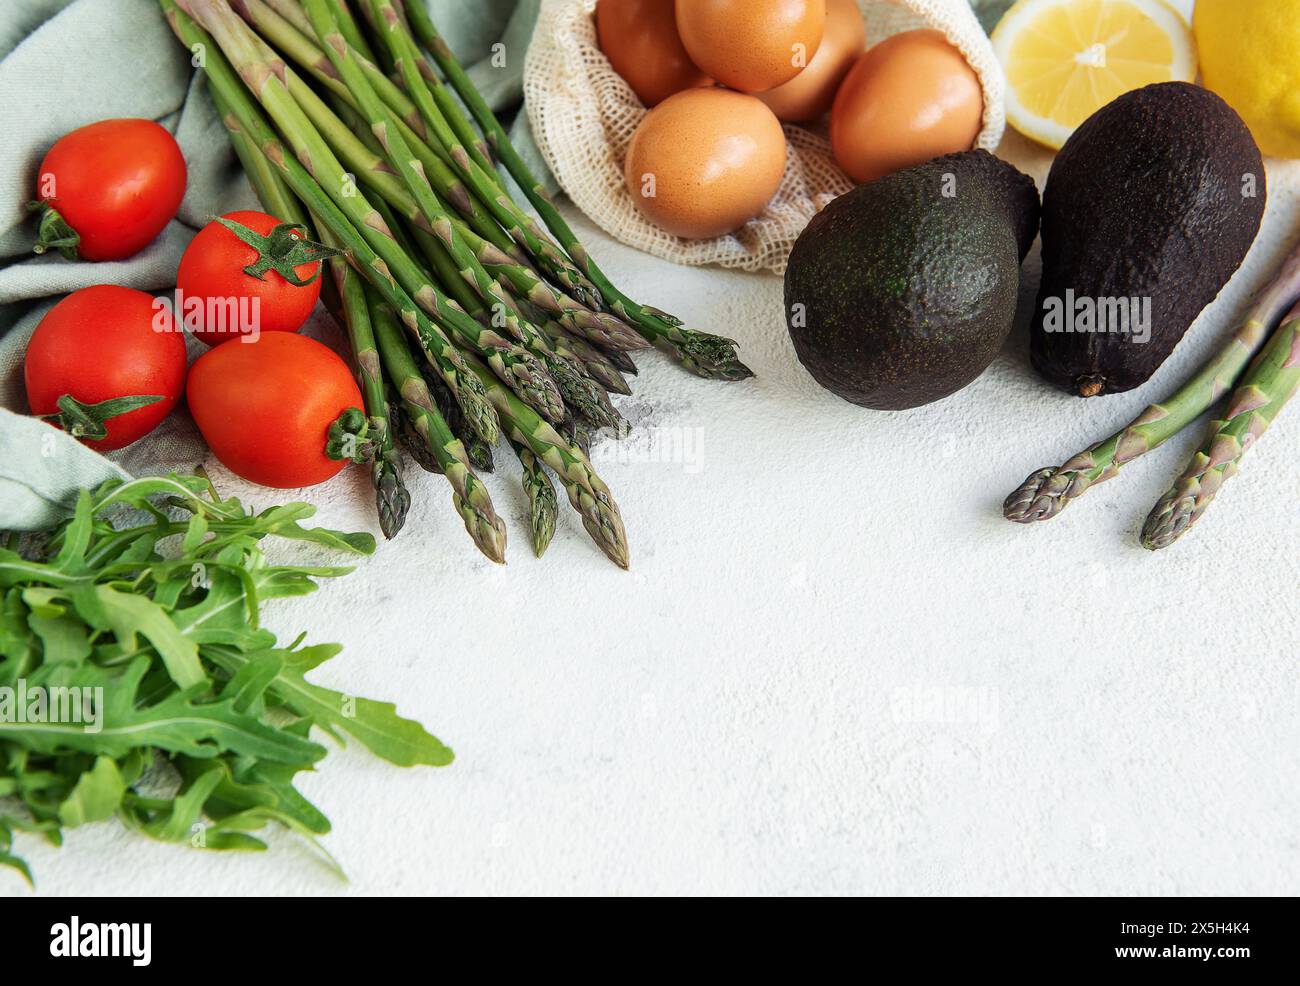 Una varietà di verdure fresche, tra cui asparagi, pomodori e rucola, sono ordinatamente organizzati accanto a avocado maturi e un sacchetto di uova scure. L'arr Foto Stock